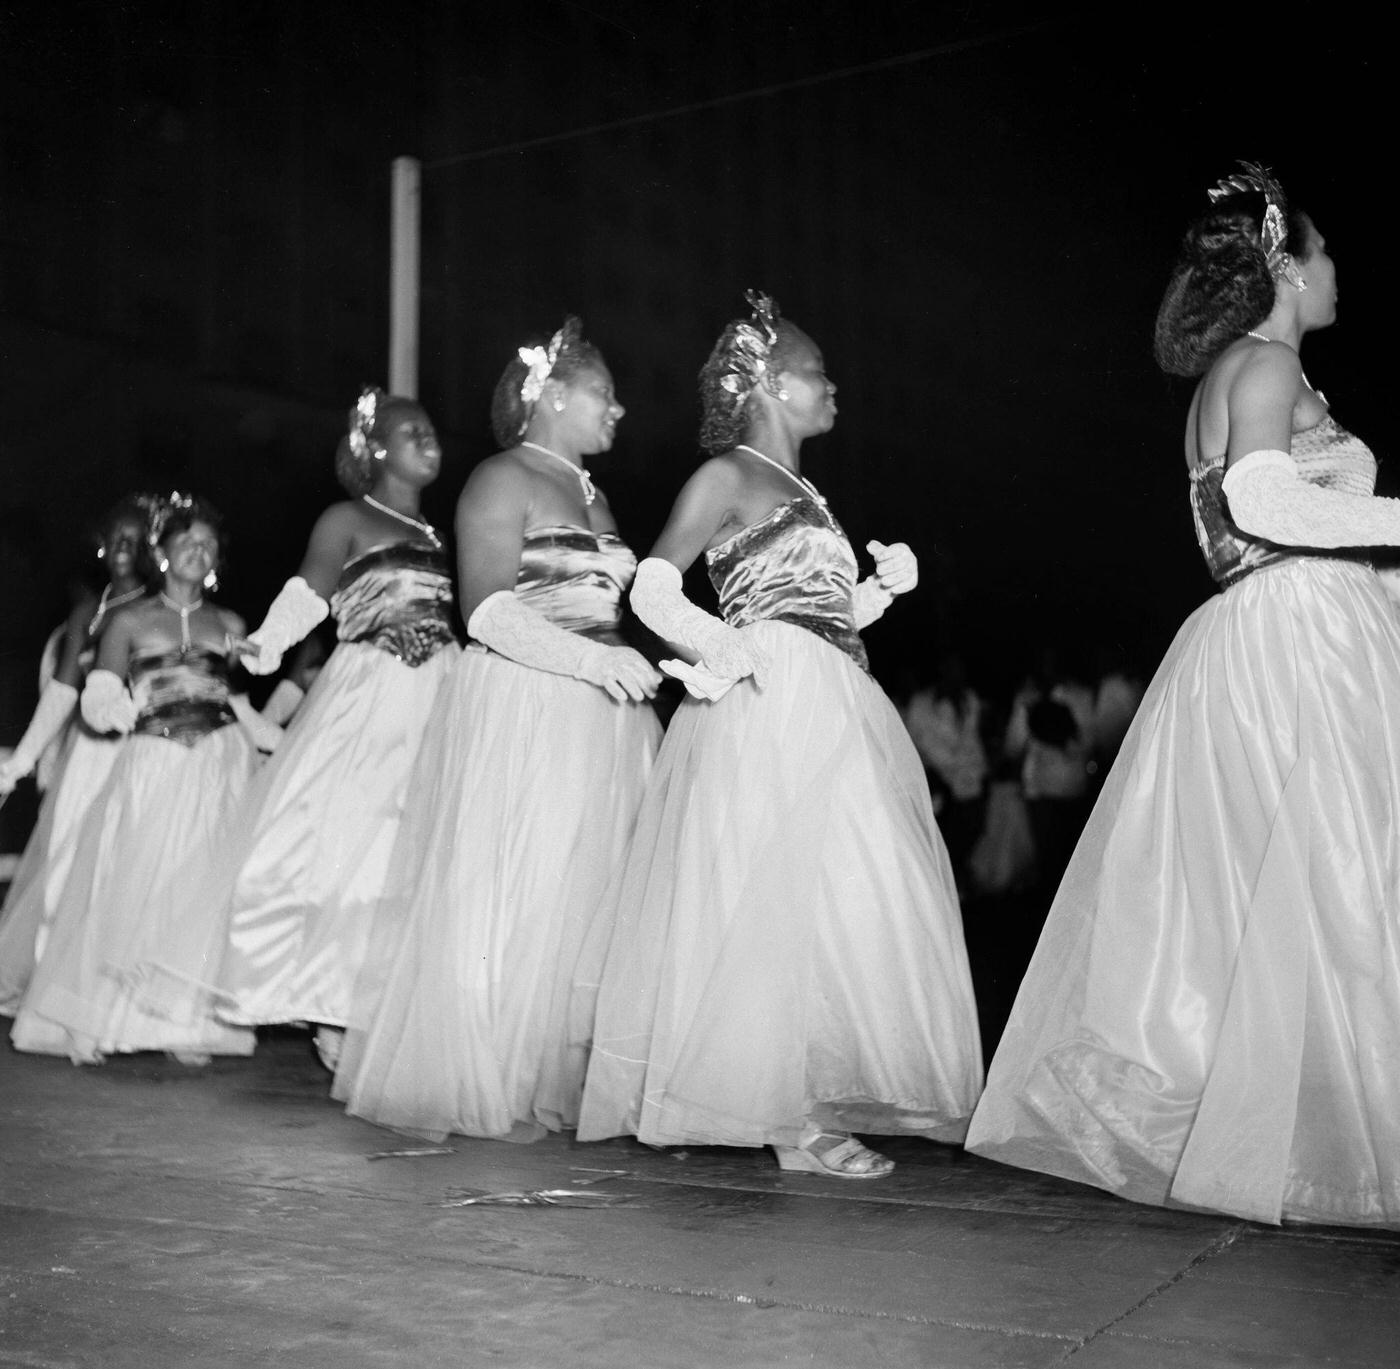 Carnival parade revelers dance in Rio de Janeiro's Carnival. 1953